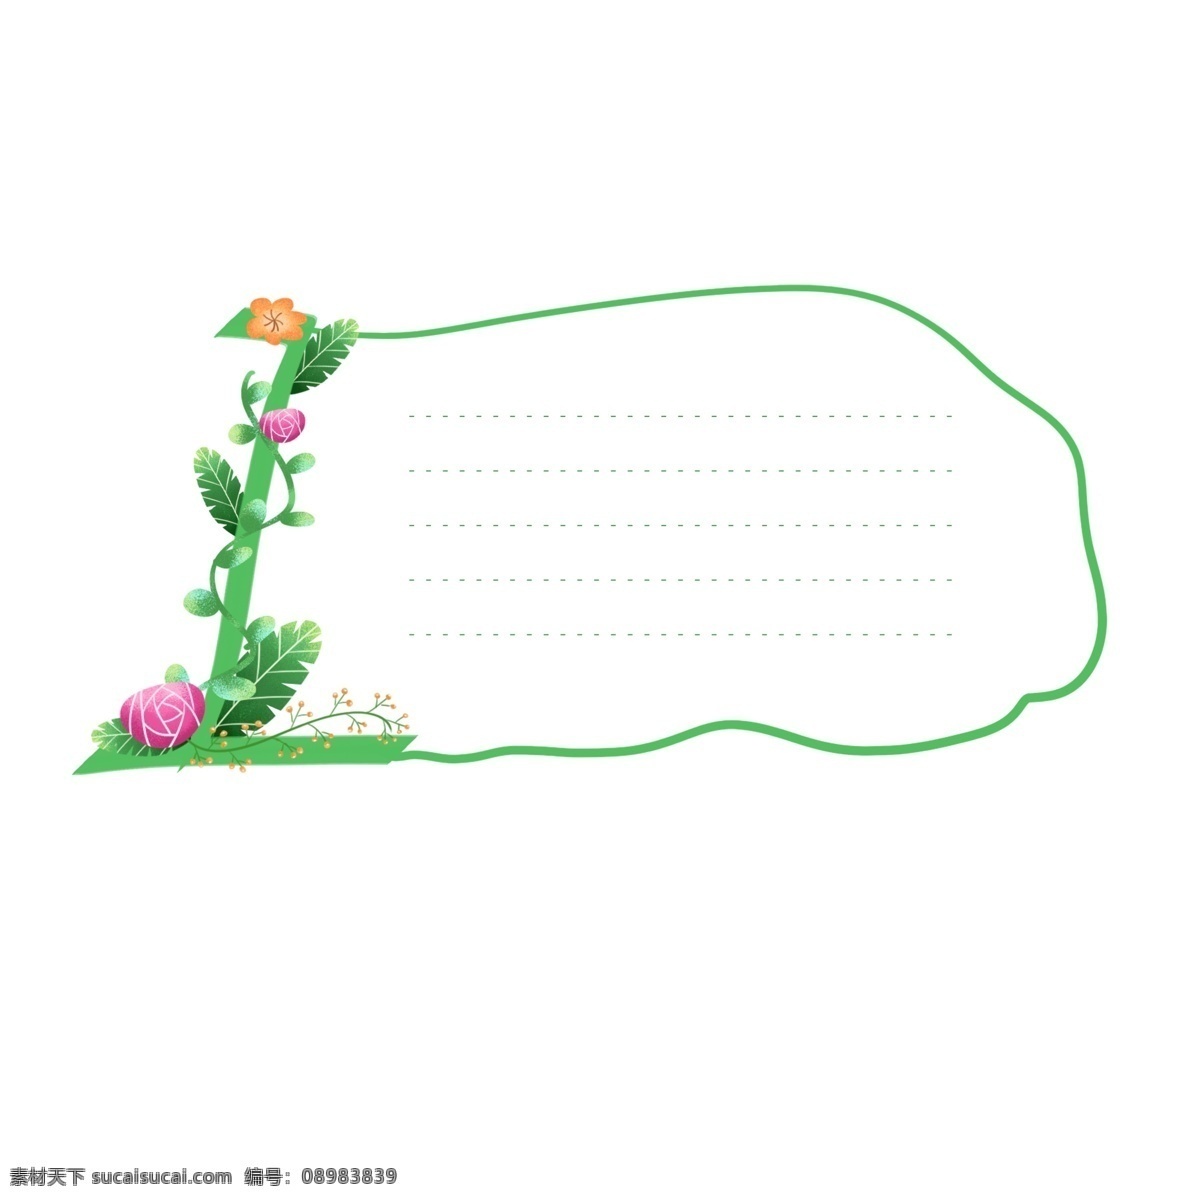 手绘 绿色 清新 数字 植物 鲜花 装饰 边框 元素 手绘植物 手绘鲜花 植物元素 鲜花元素 对话框元素